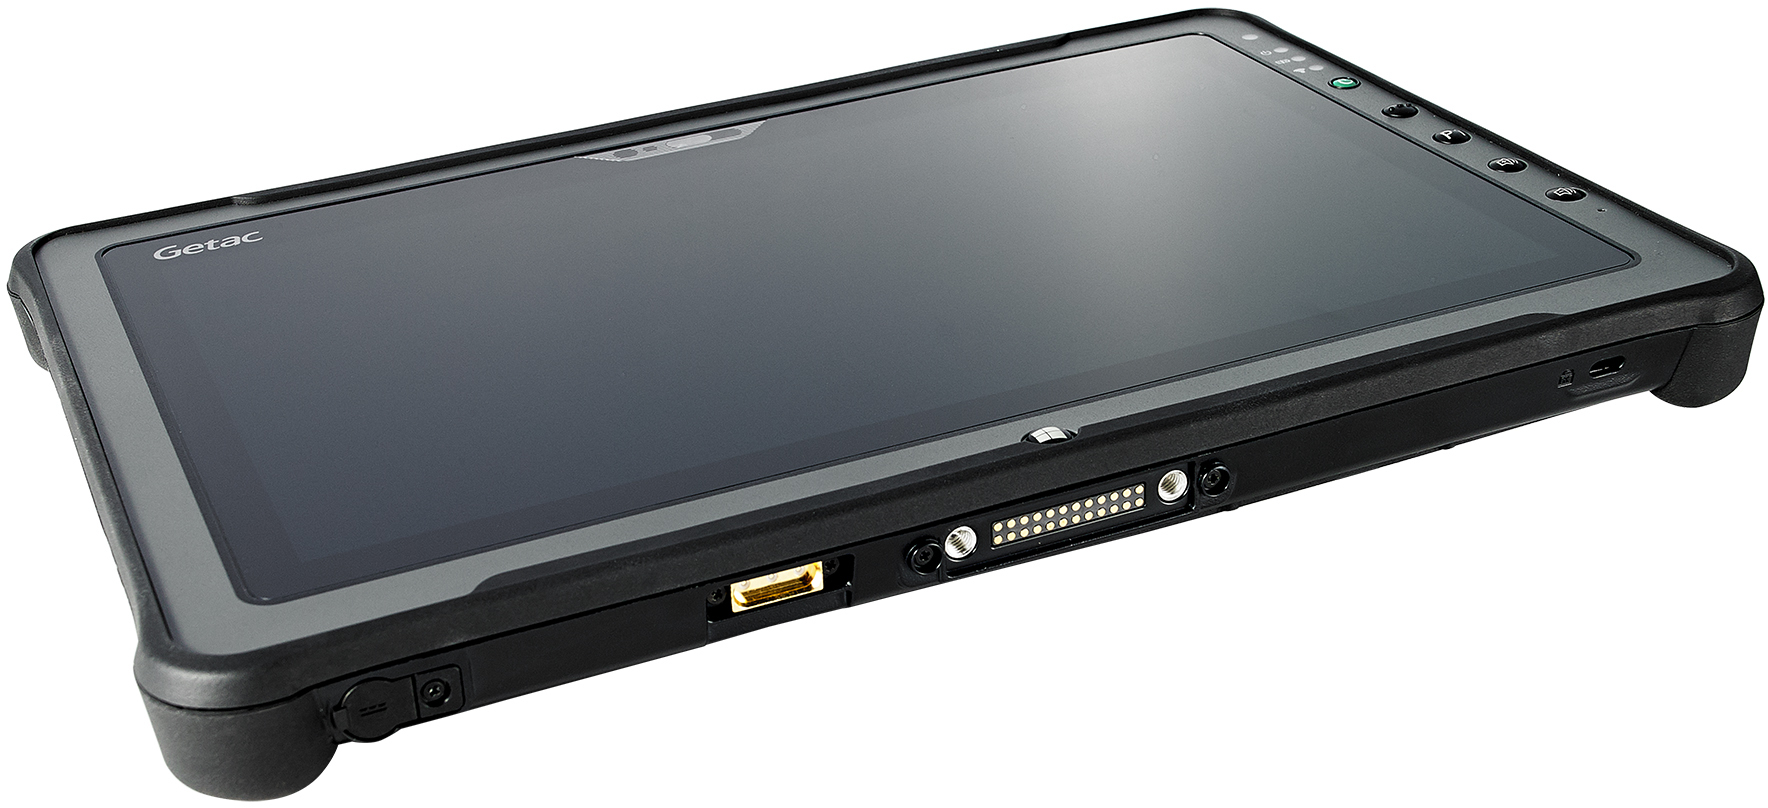 Getac F110 G5 i5 8/256GB Tablet